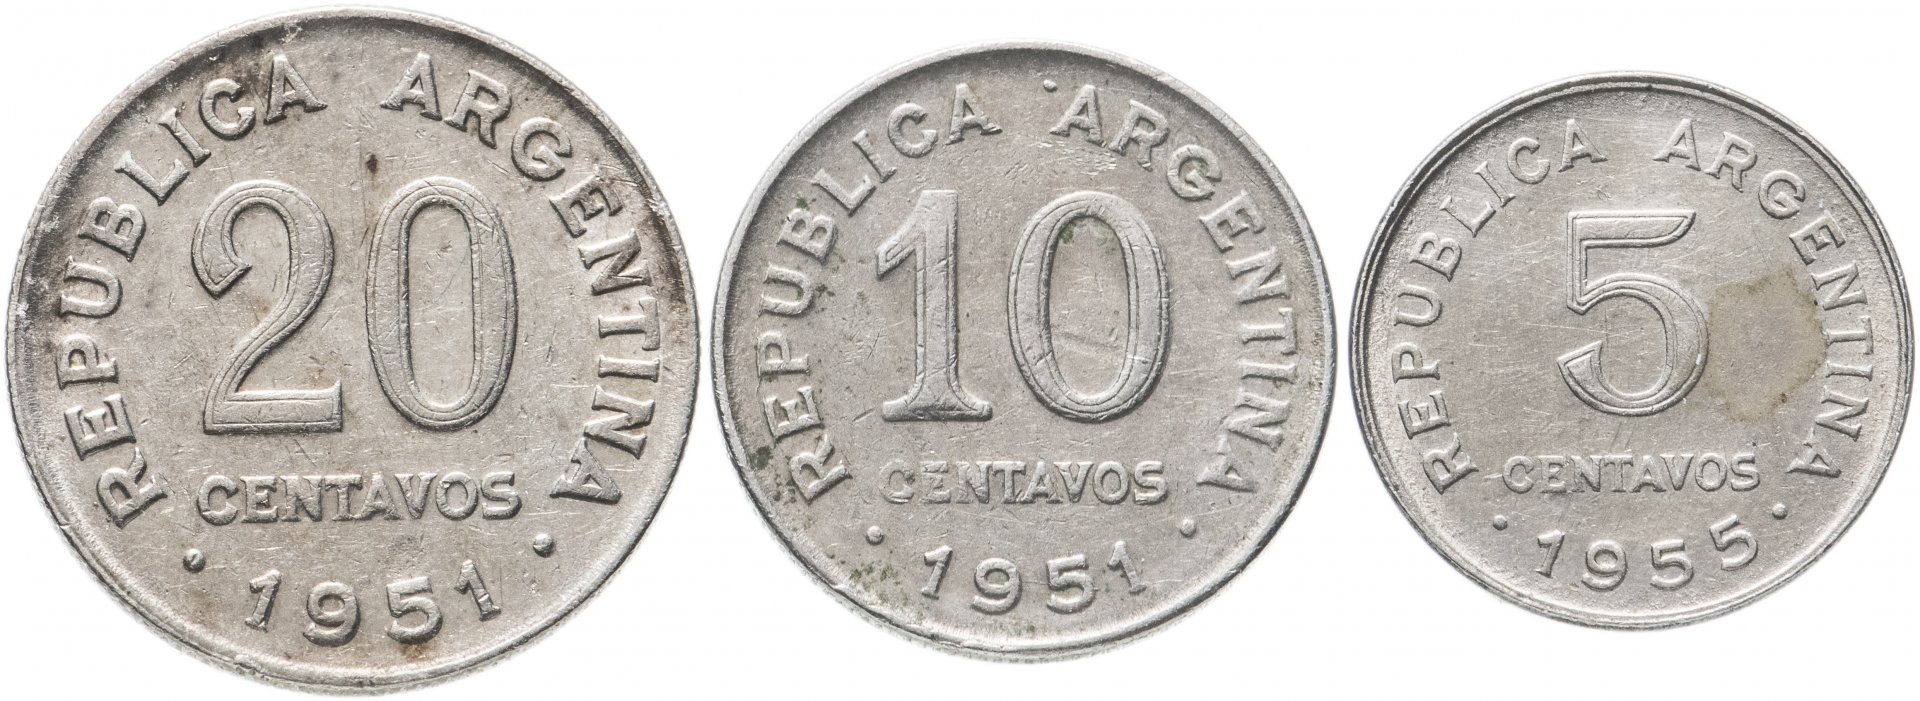 Монеты 1951. Монета 1951. Светские монеты 1951. Аргентина 10 песо 1951-1955. 50, 25 И 10 сен 1951-1955 годов.